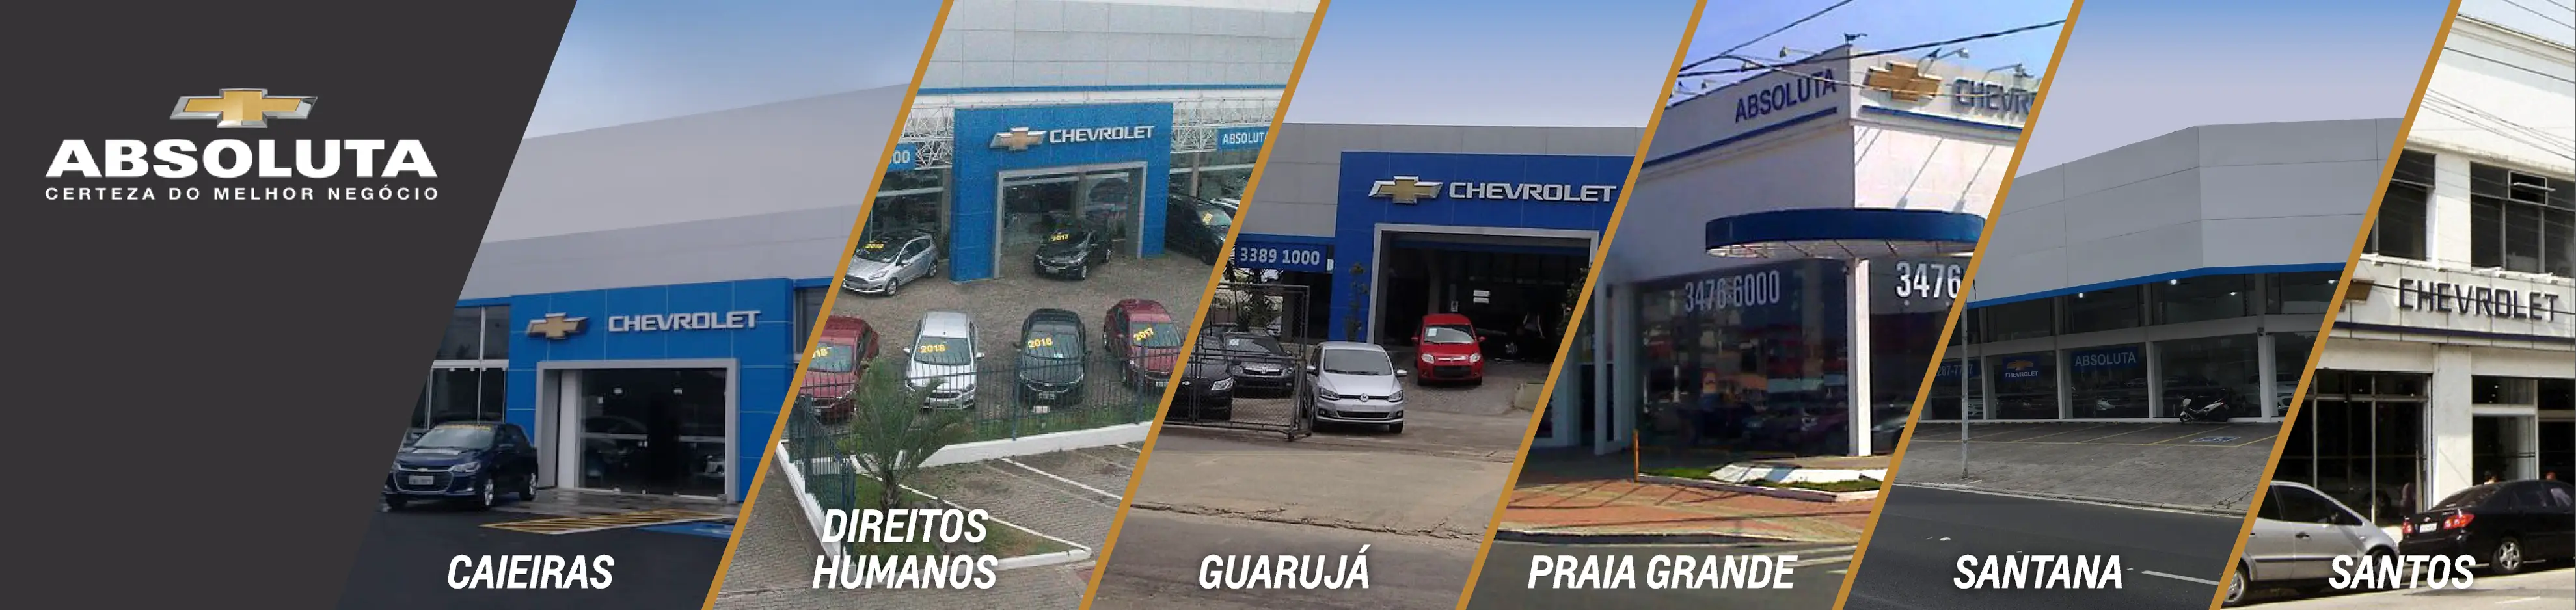 Concessionária Chevrolet Absoluta Guarujá, na Av. Santos Dumont